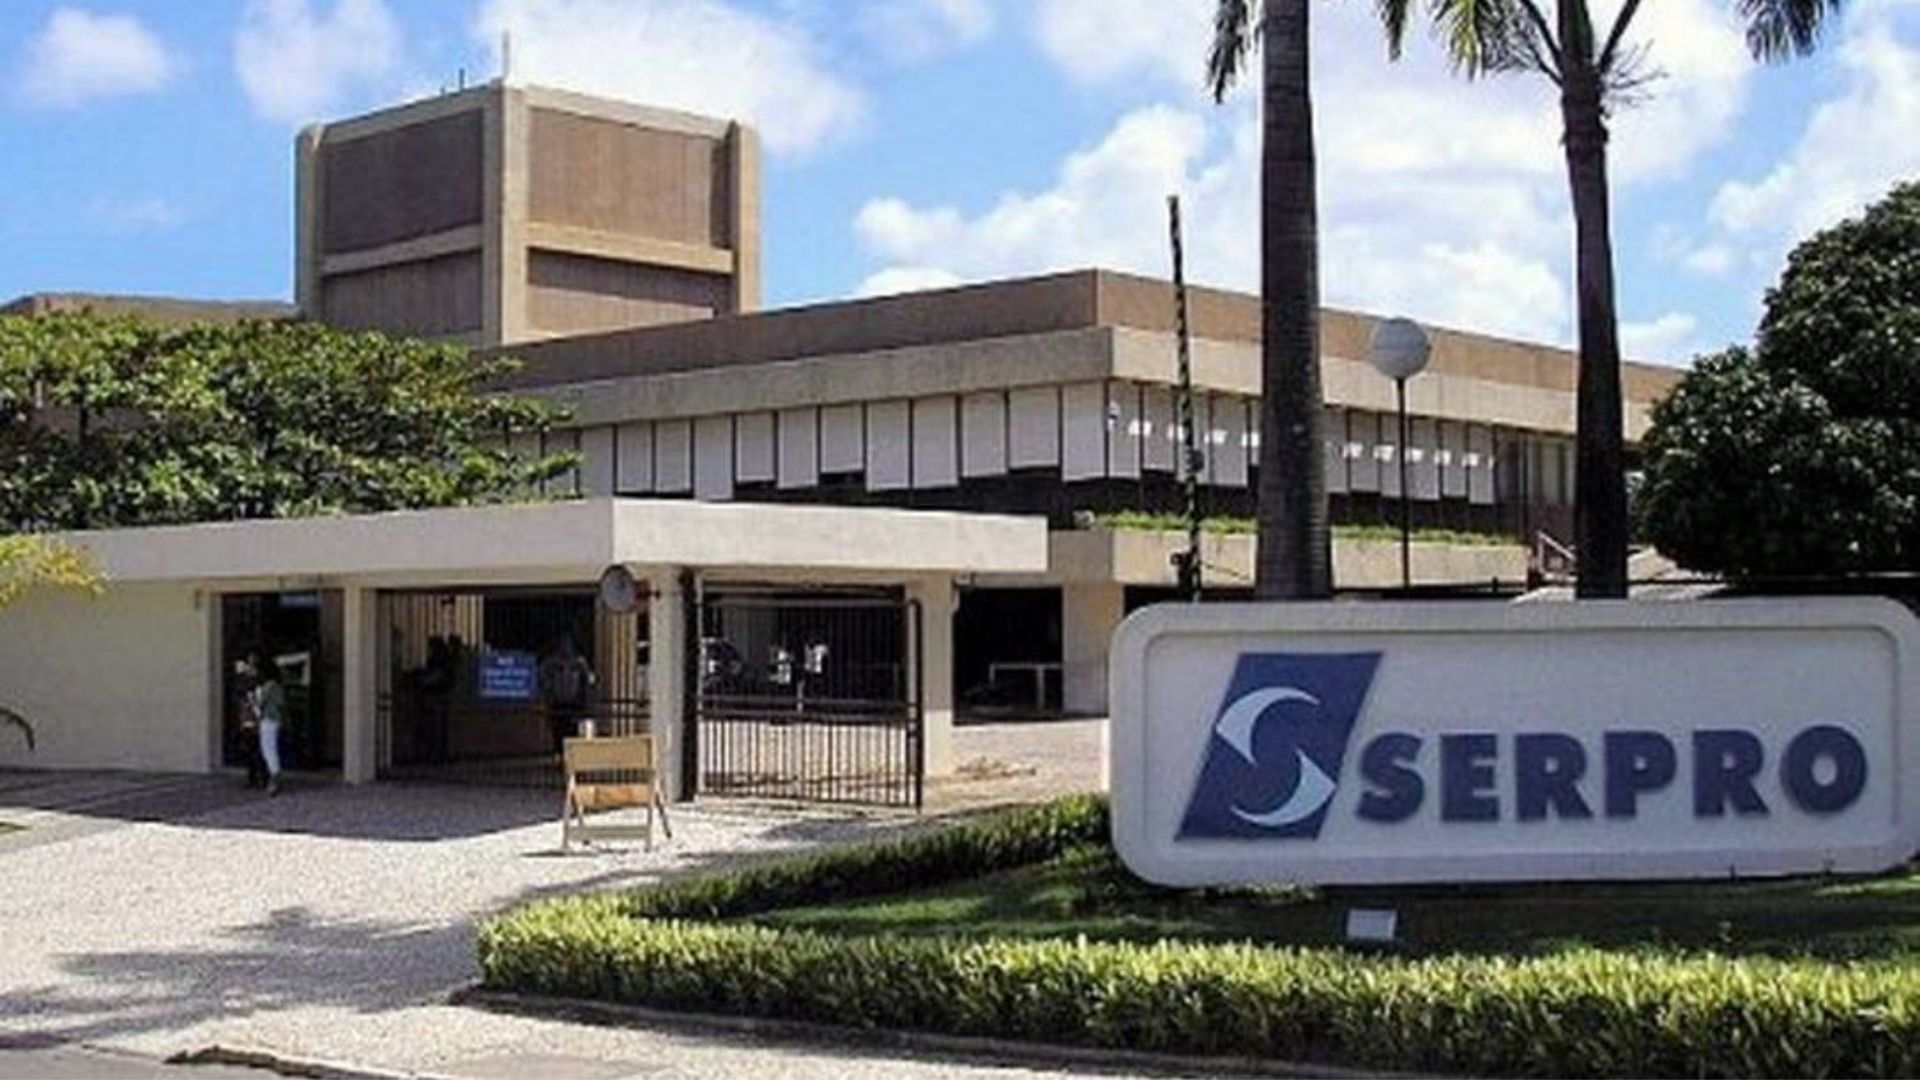 Foto da fachada da Serpro, Serviço Federal de Processamento de Dados. Nome em azul com fundo branco;